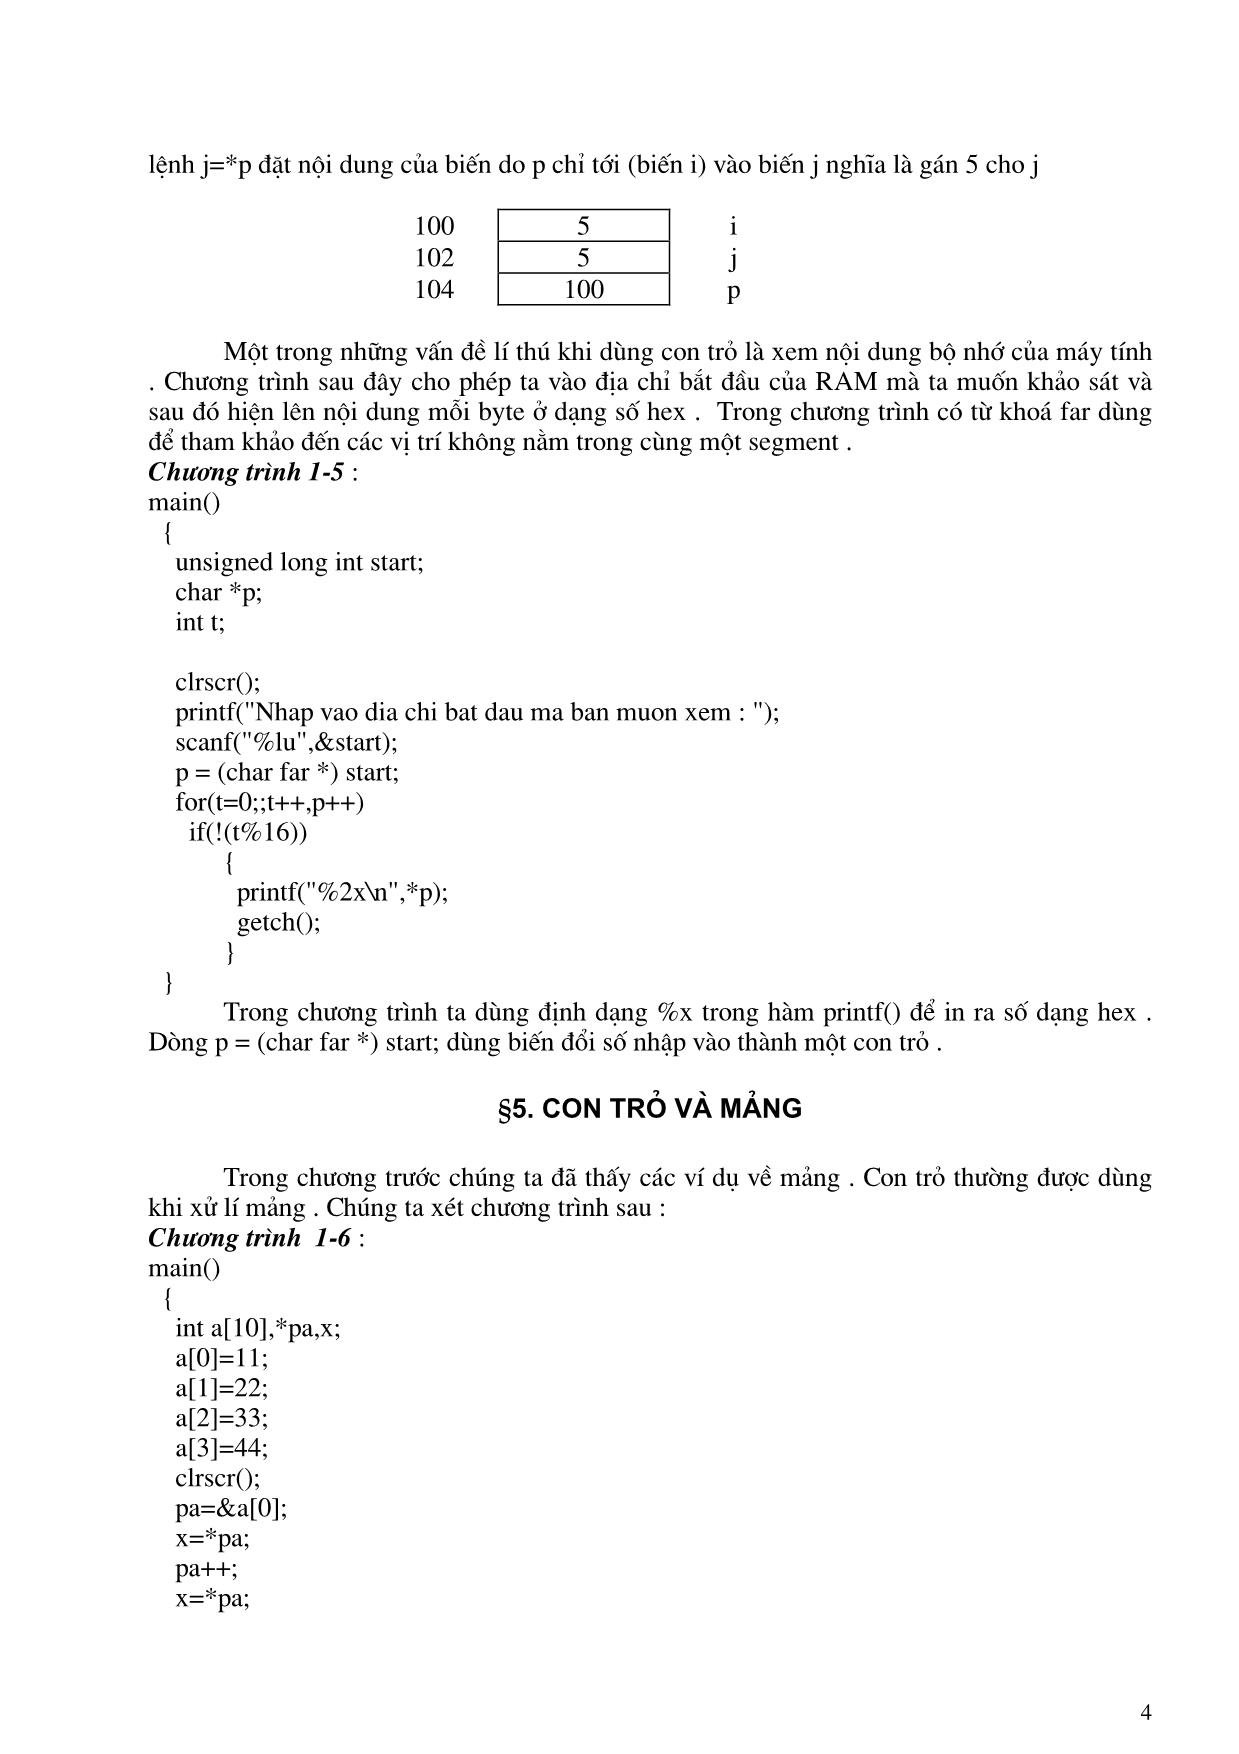 Giáo trình Turbo C nâng cao và C++ (Phần 1) trang 4